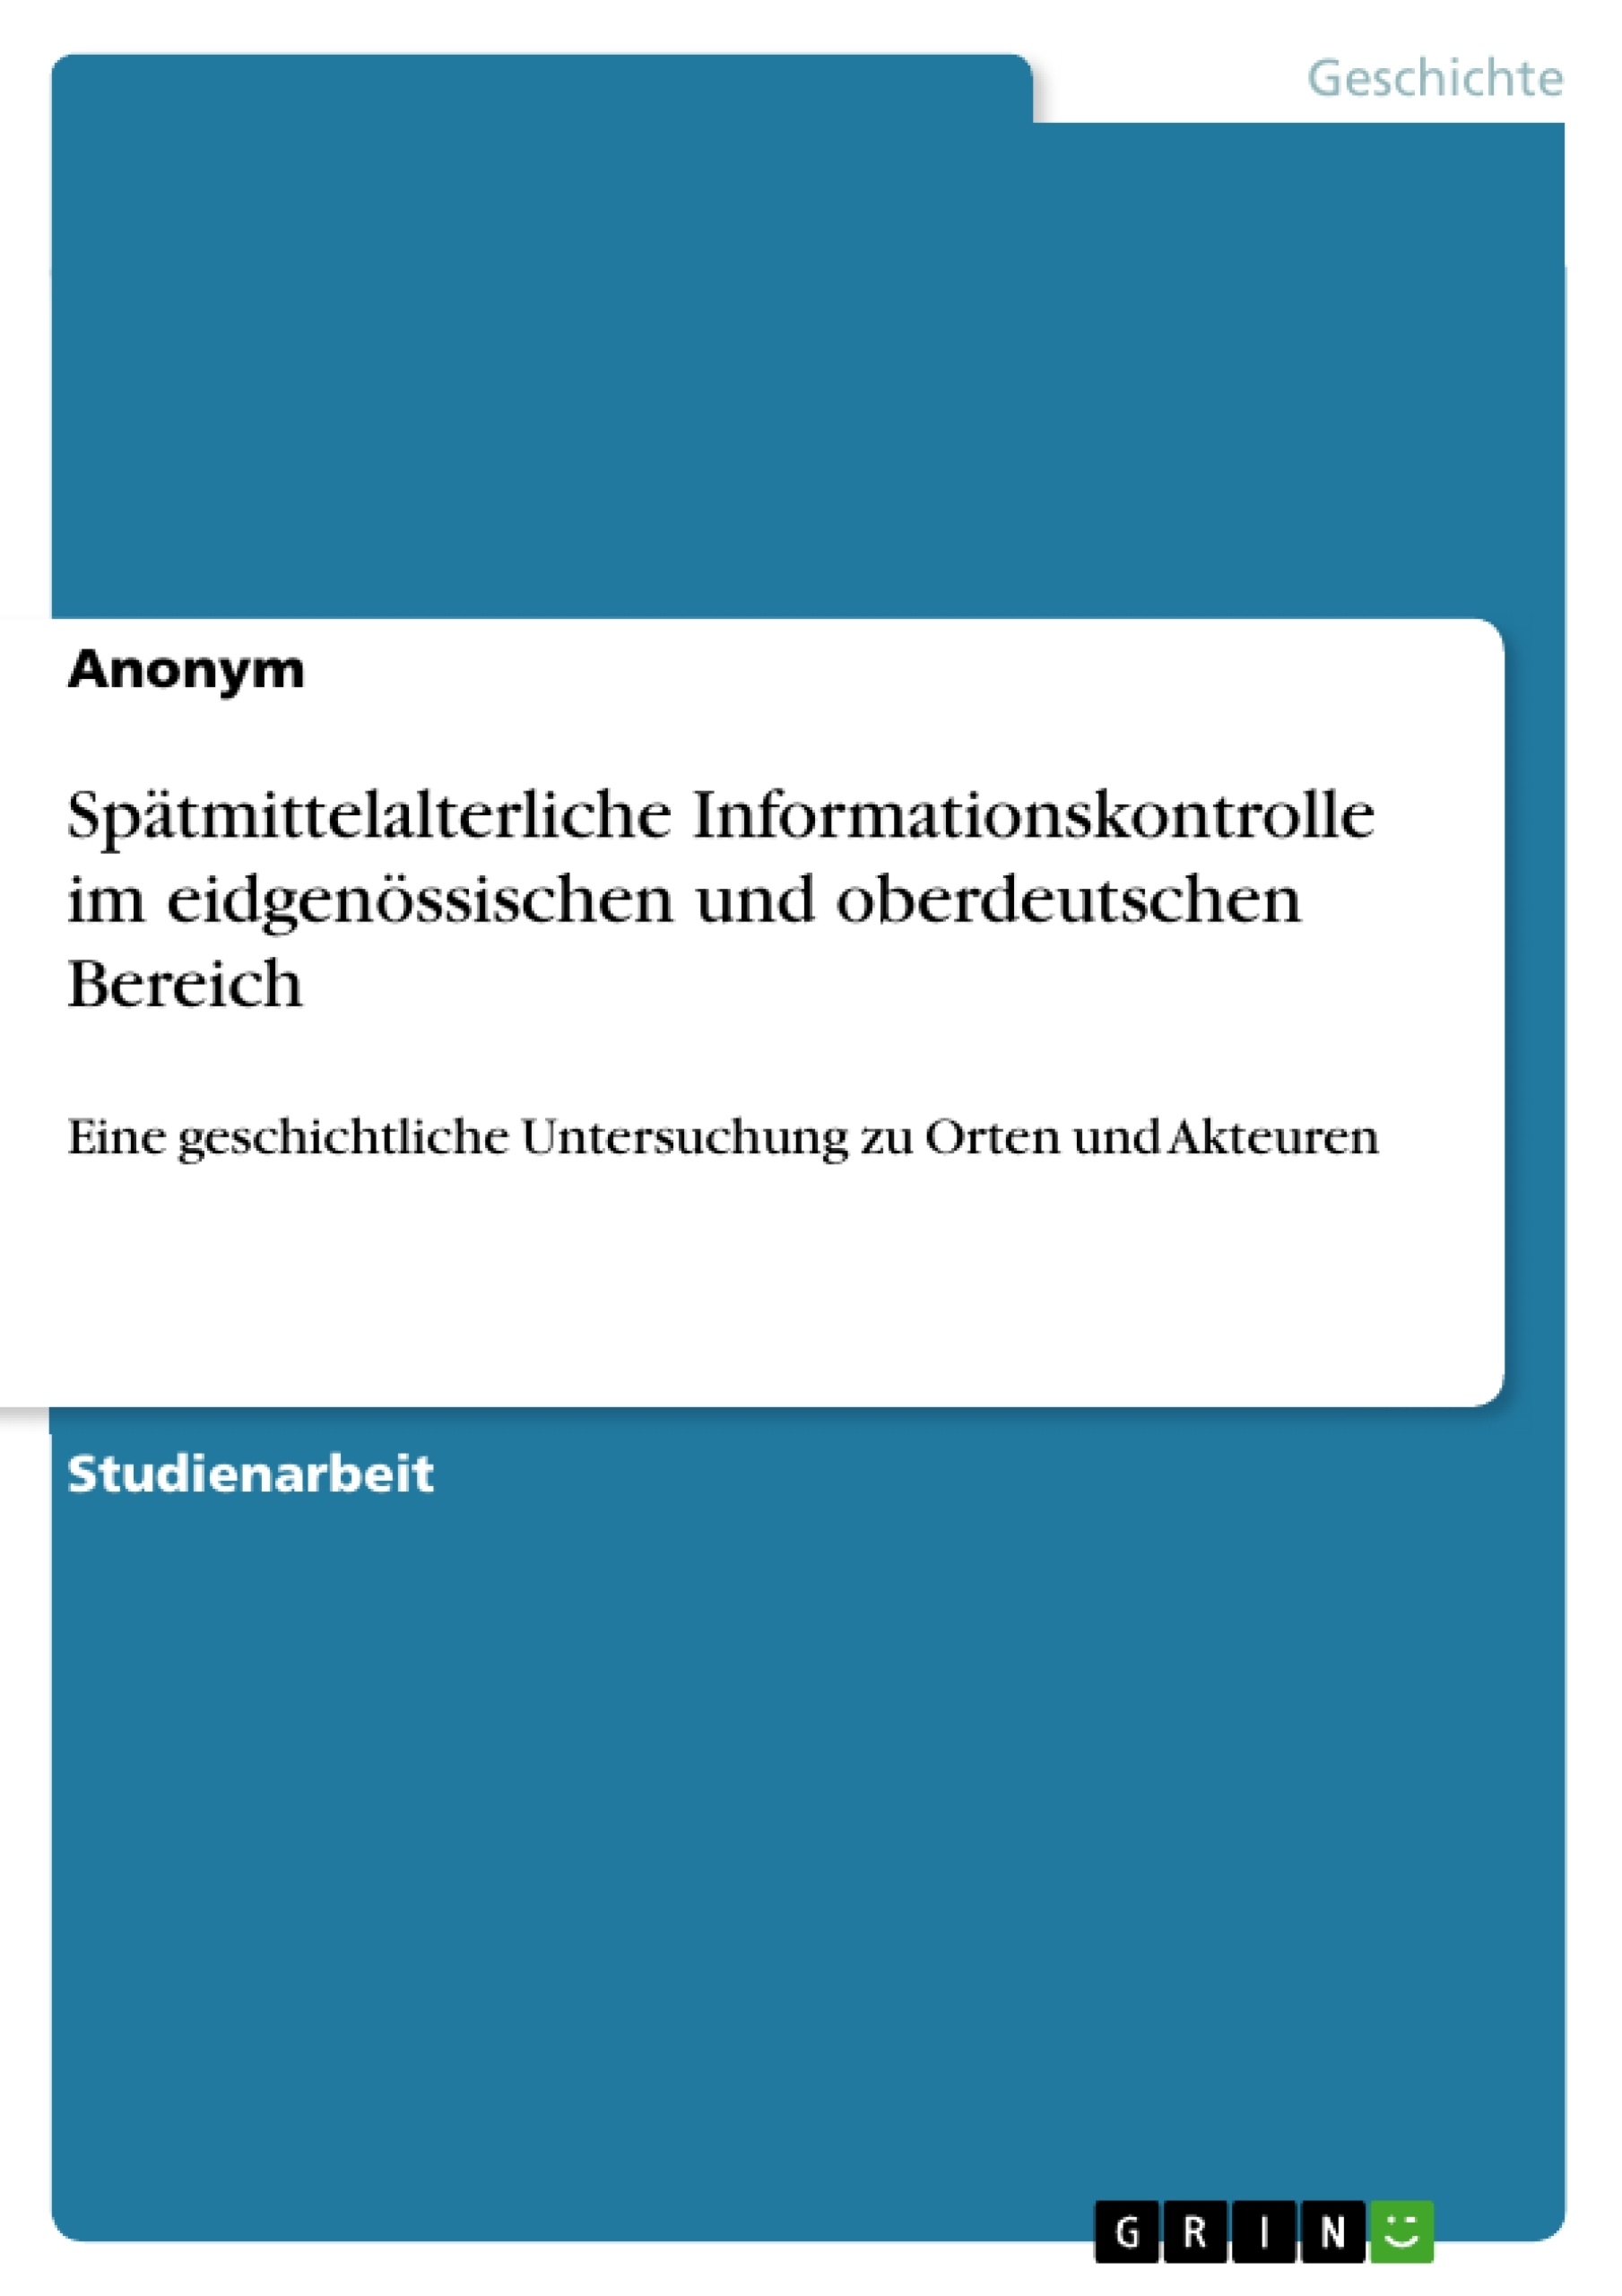 Título: Spätmittelalterliche Informationskontrolle im eidgenössischen und oberdeutschen Bereich